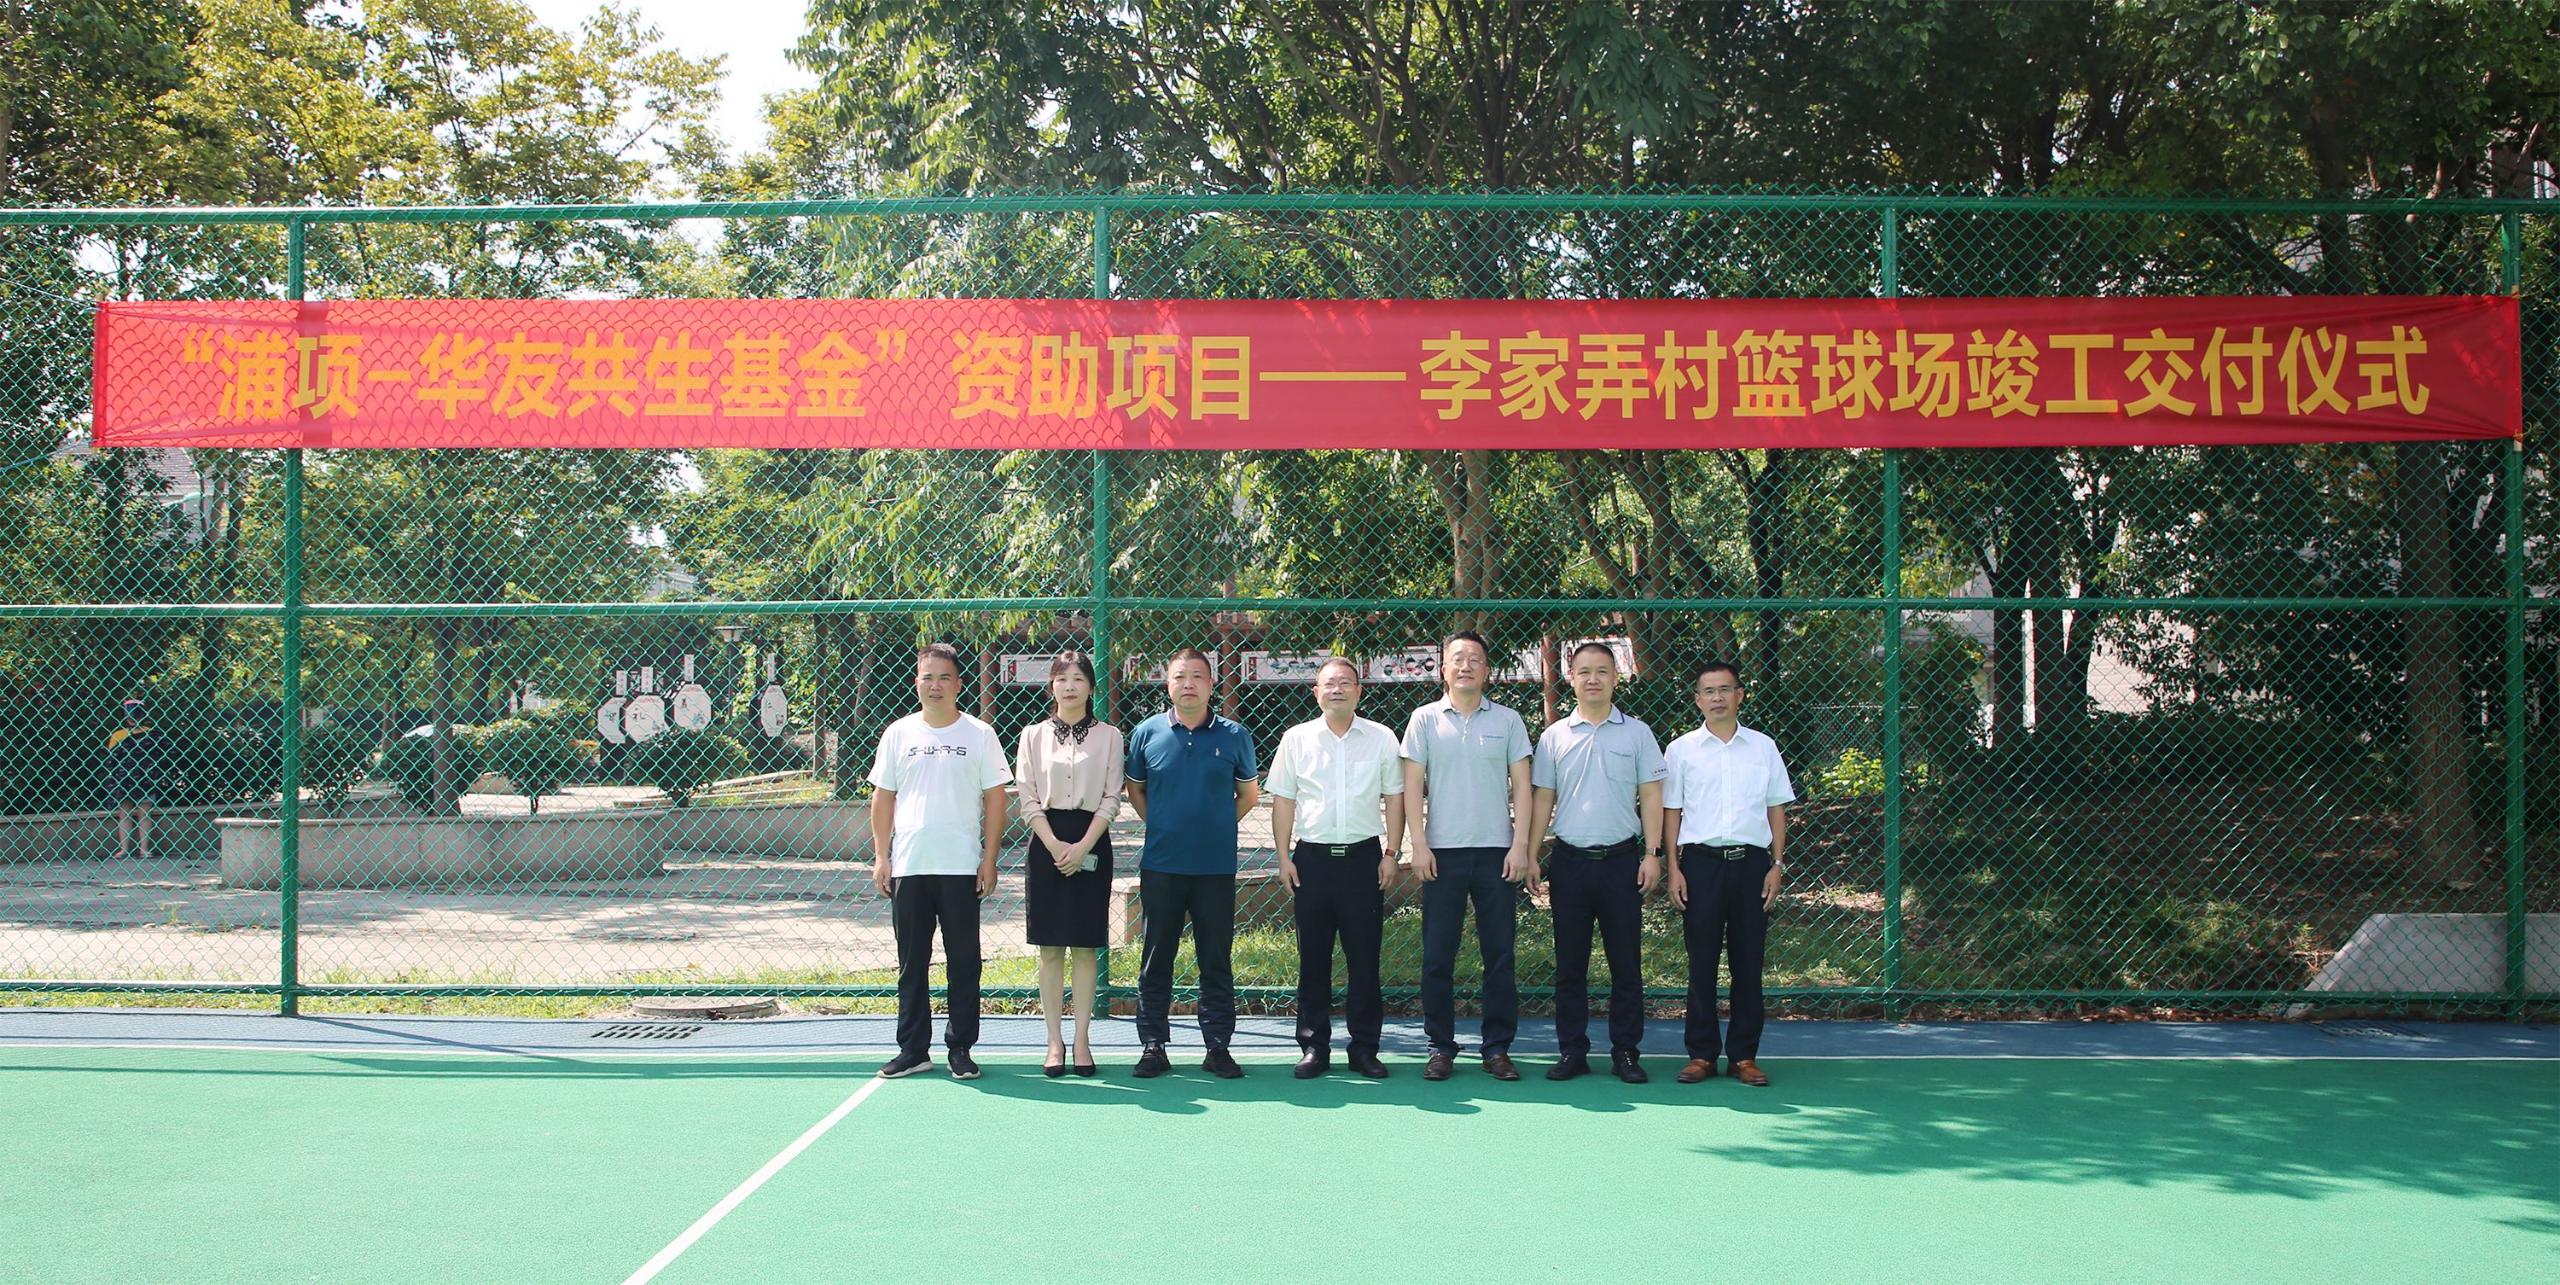 포스코케미칼과 화유코발트가 공동으로 기증한 중국 저장성 퉁샹시 실외농구장에서 지역주민들이 농구를 즐기고 있다.